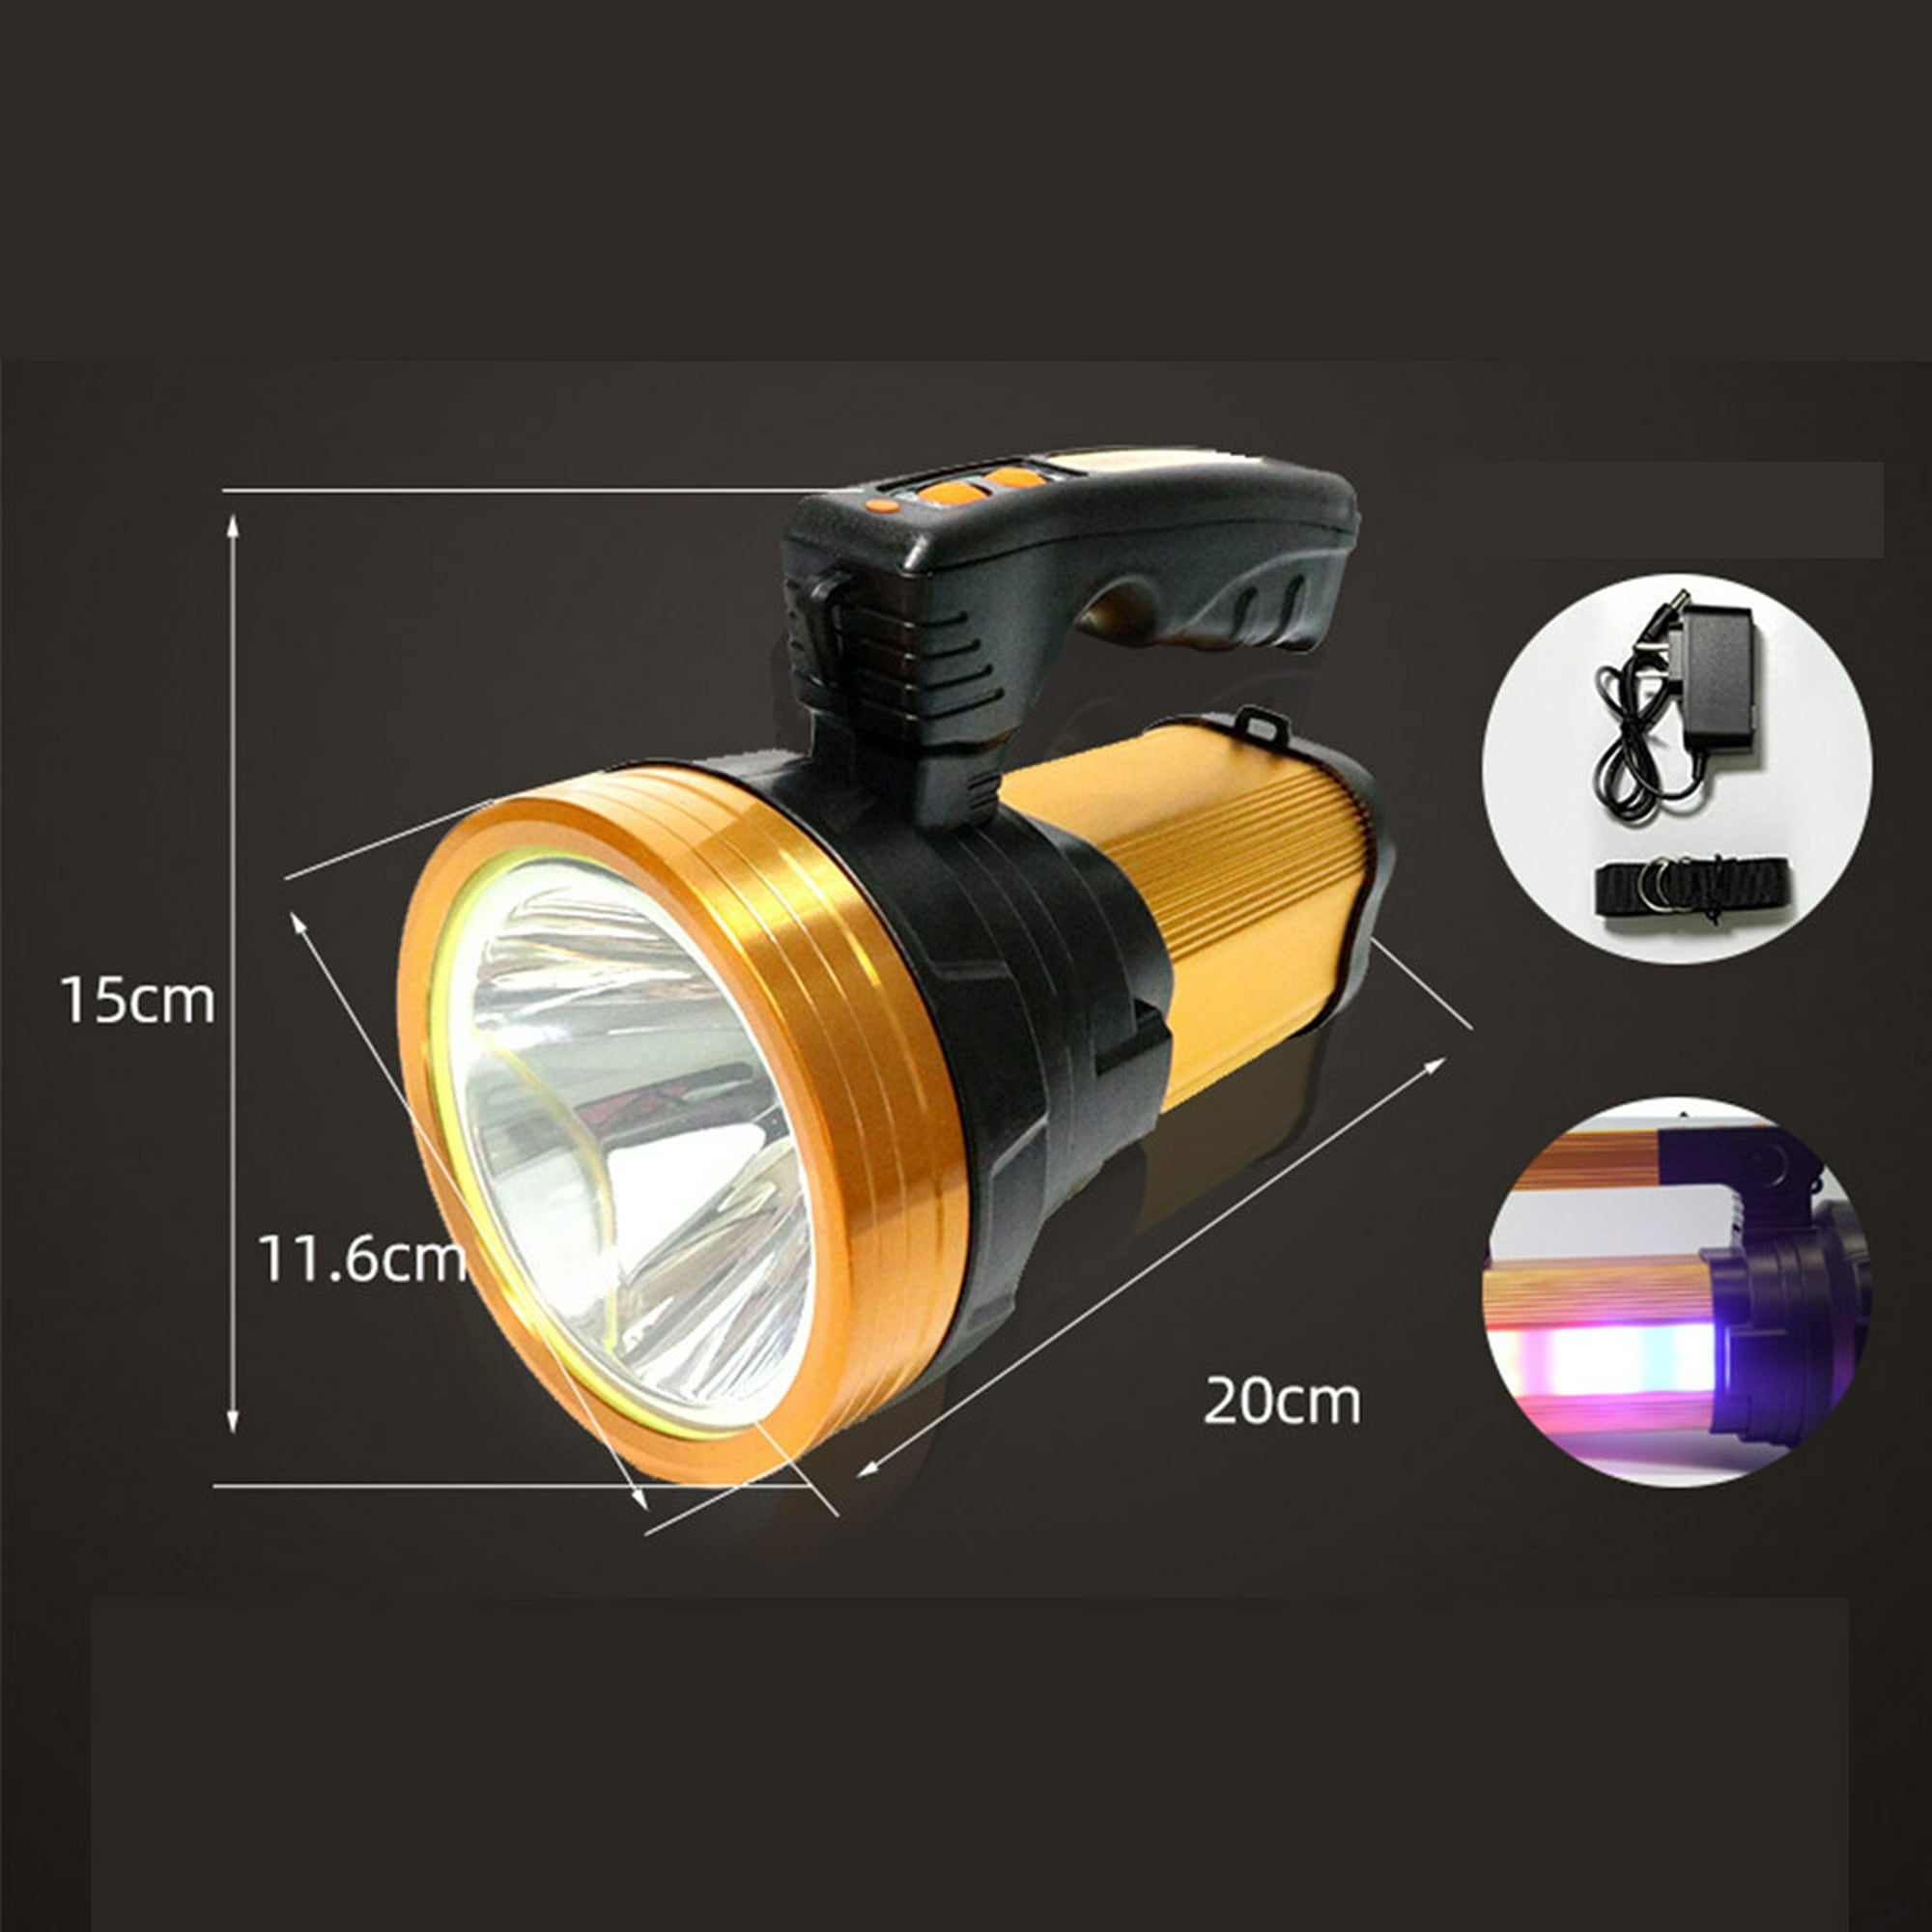 Foco LED recargable de 60 W; ¡perfecto para acampar, pescar e iluminación  de emergencia!